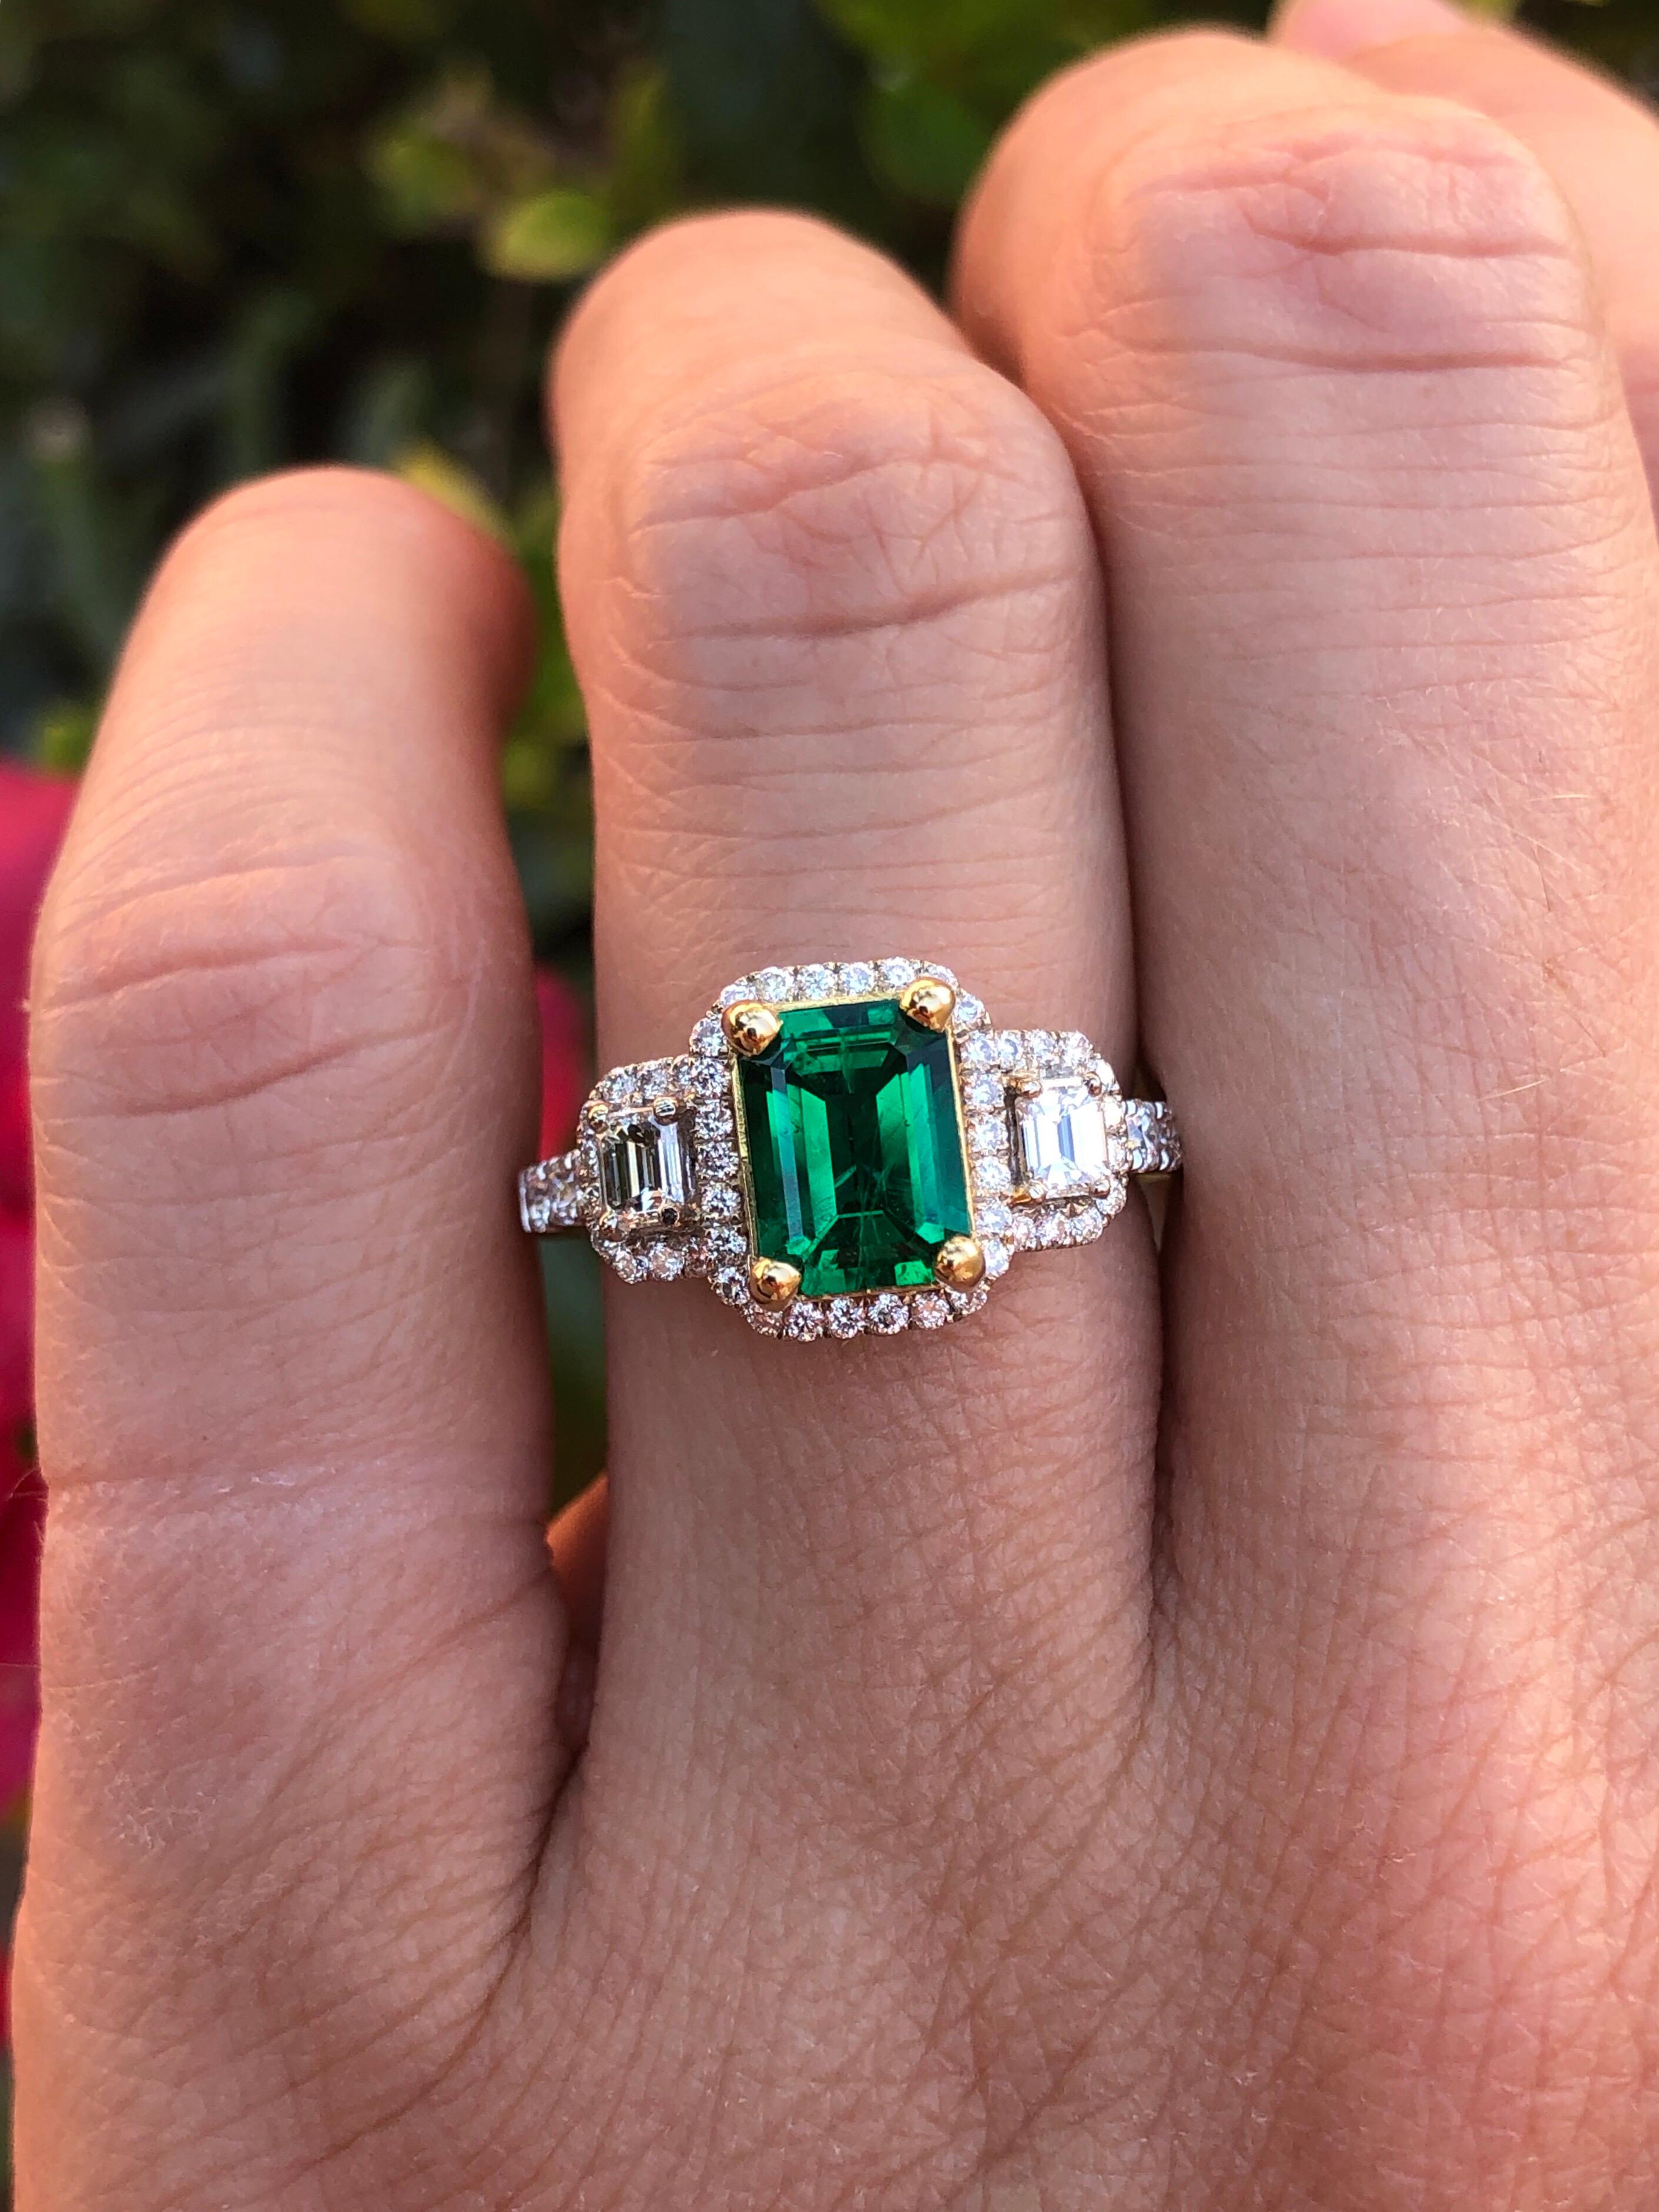 Modern Emerald Ring 1.24 Carat Emerald Cut